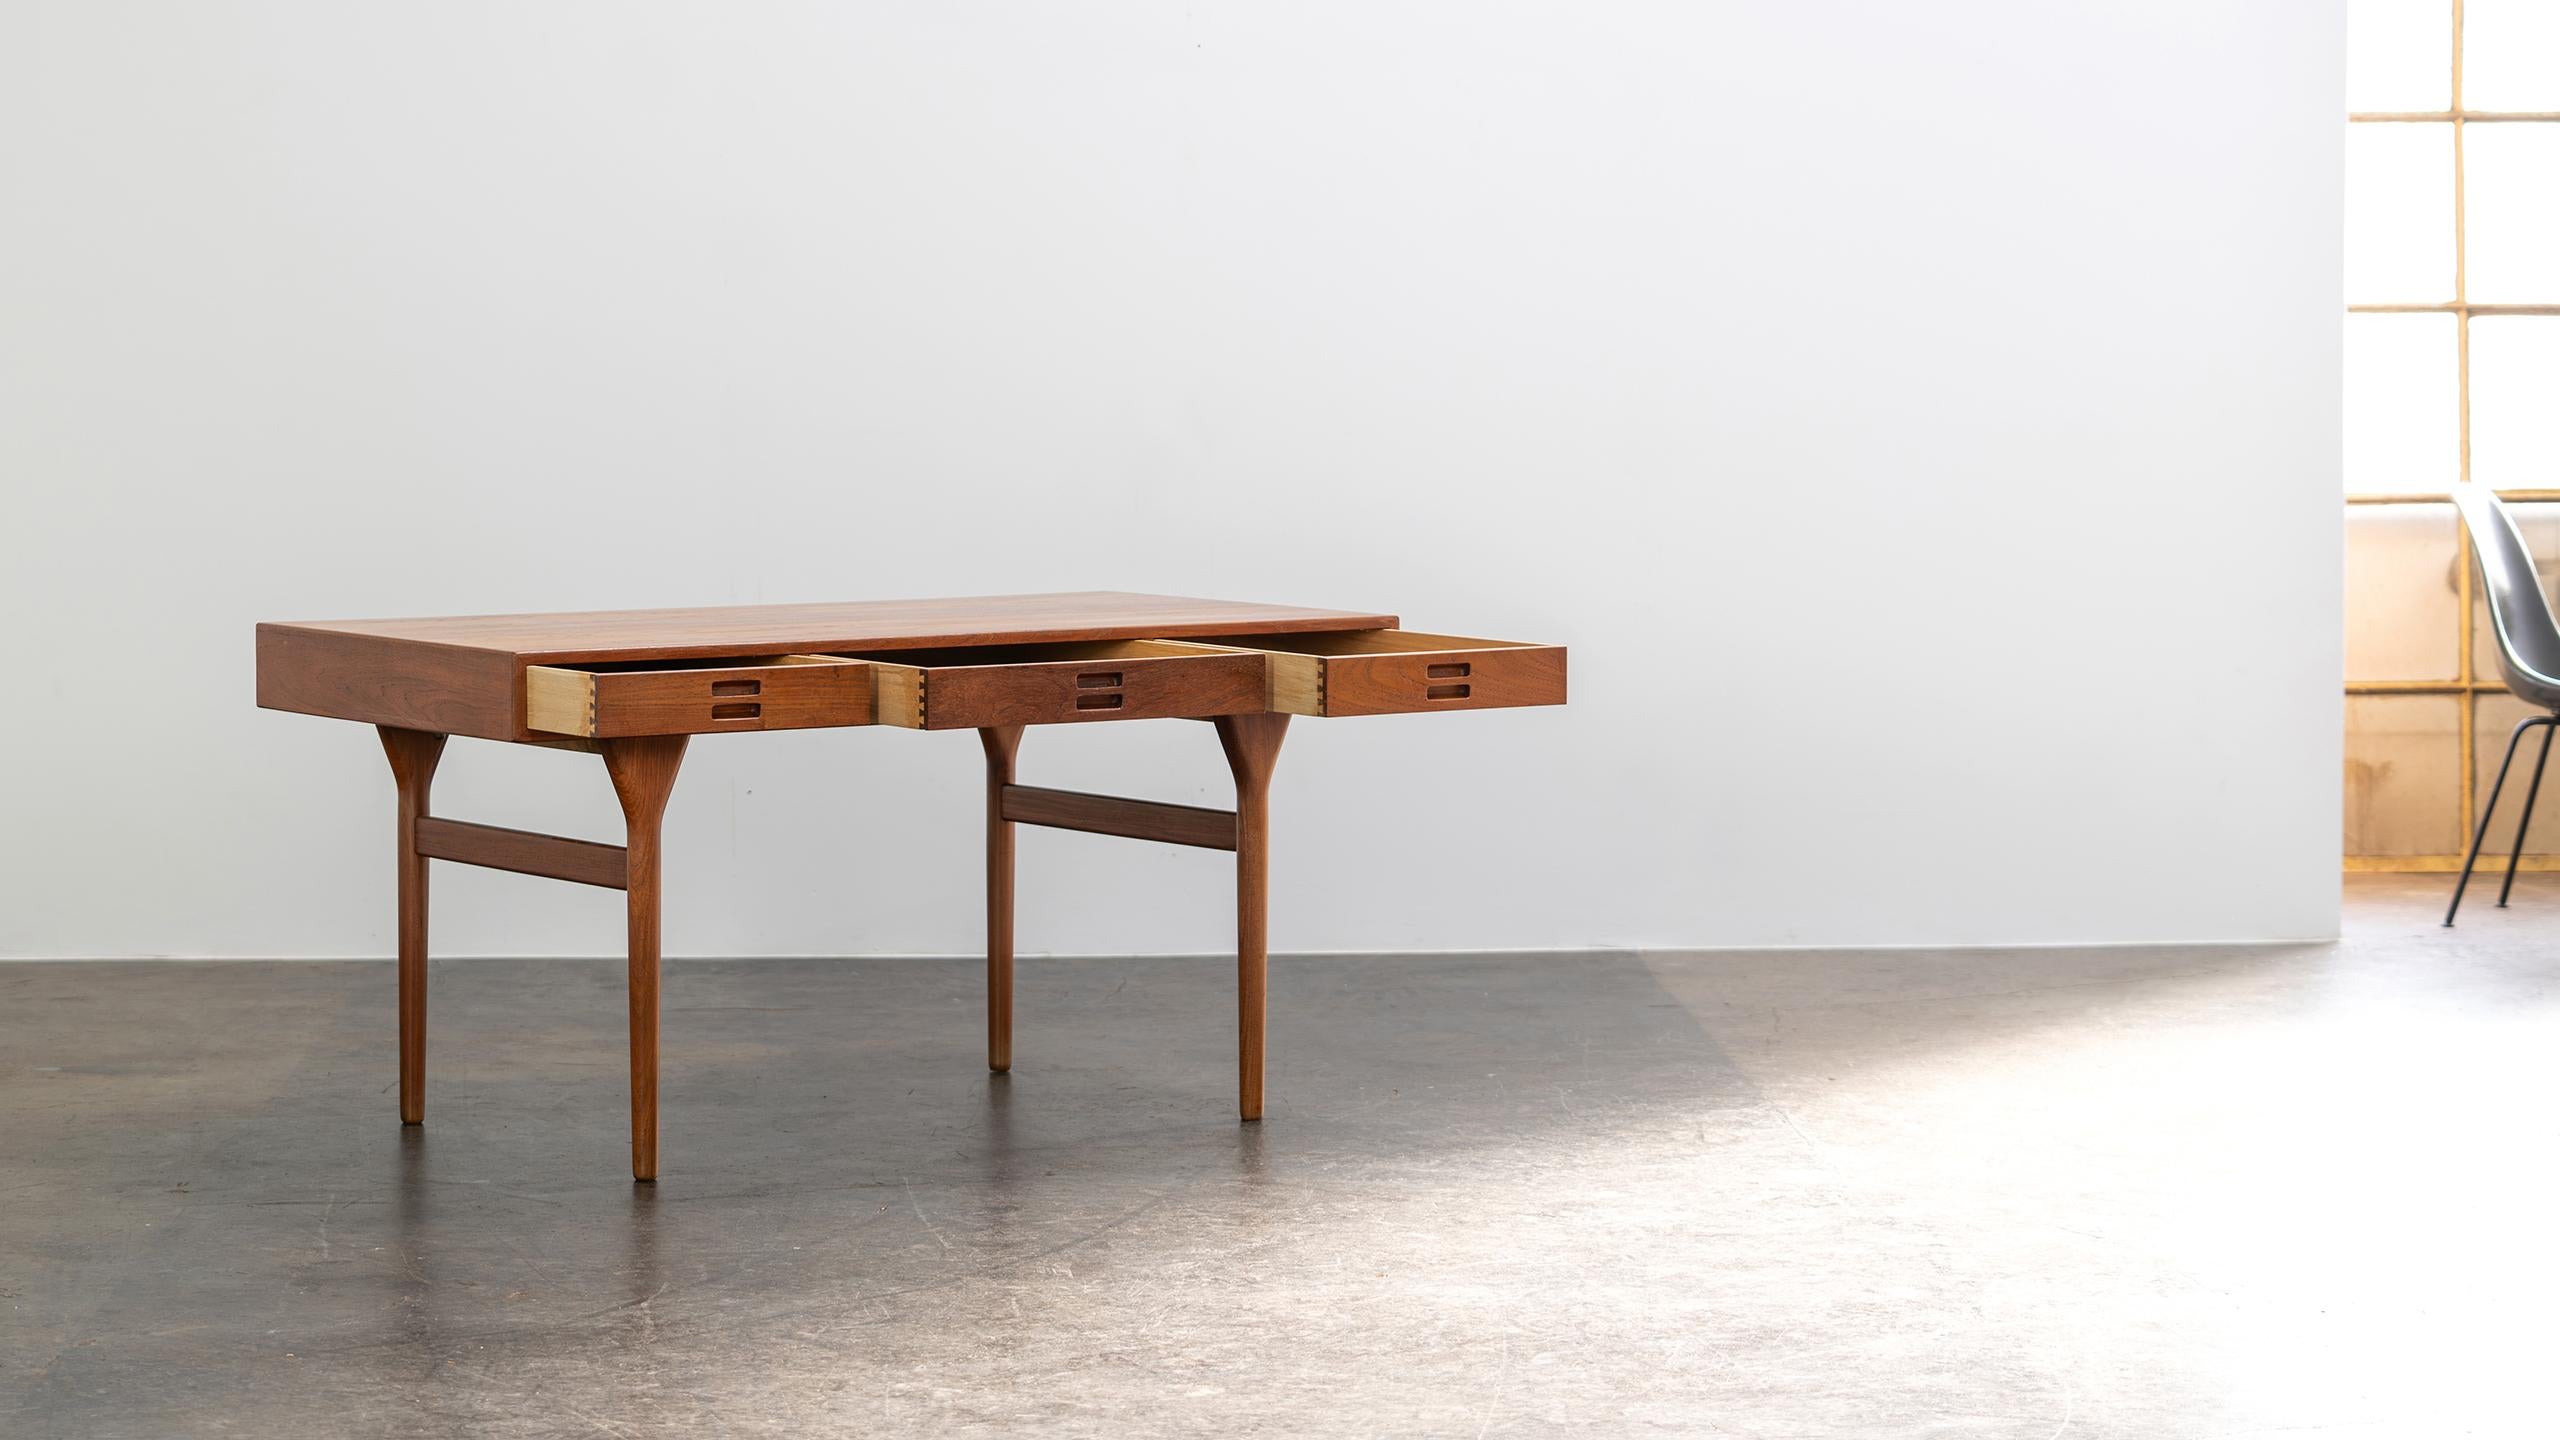 Nanna Ditzel Table Desk in Teak Søren Willadsen 1958 Denmark Mid Century Modern For Sale 2